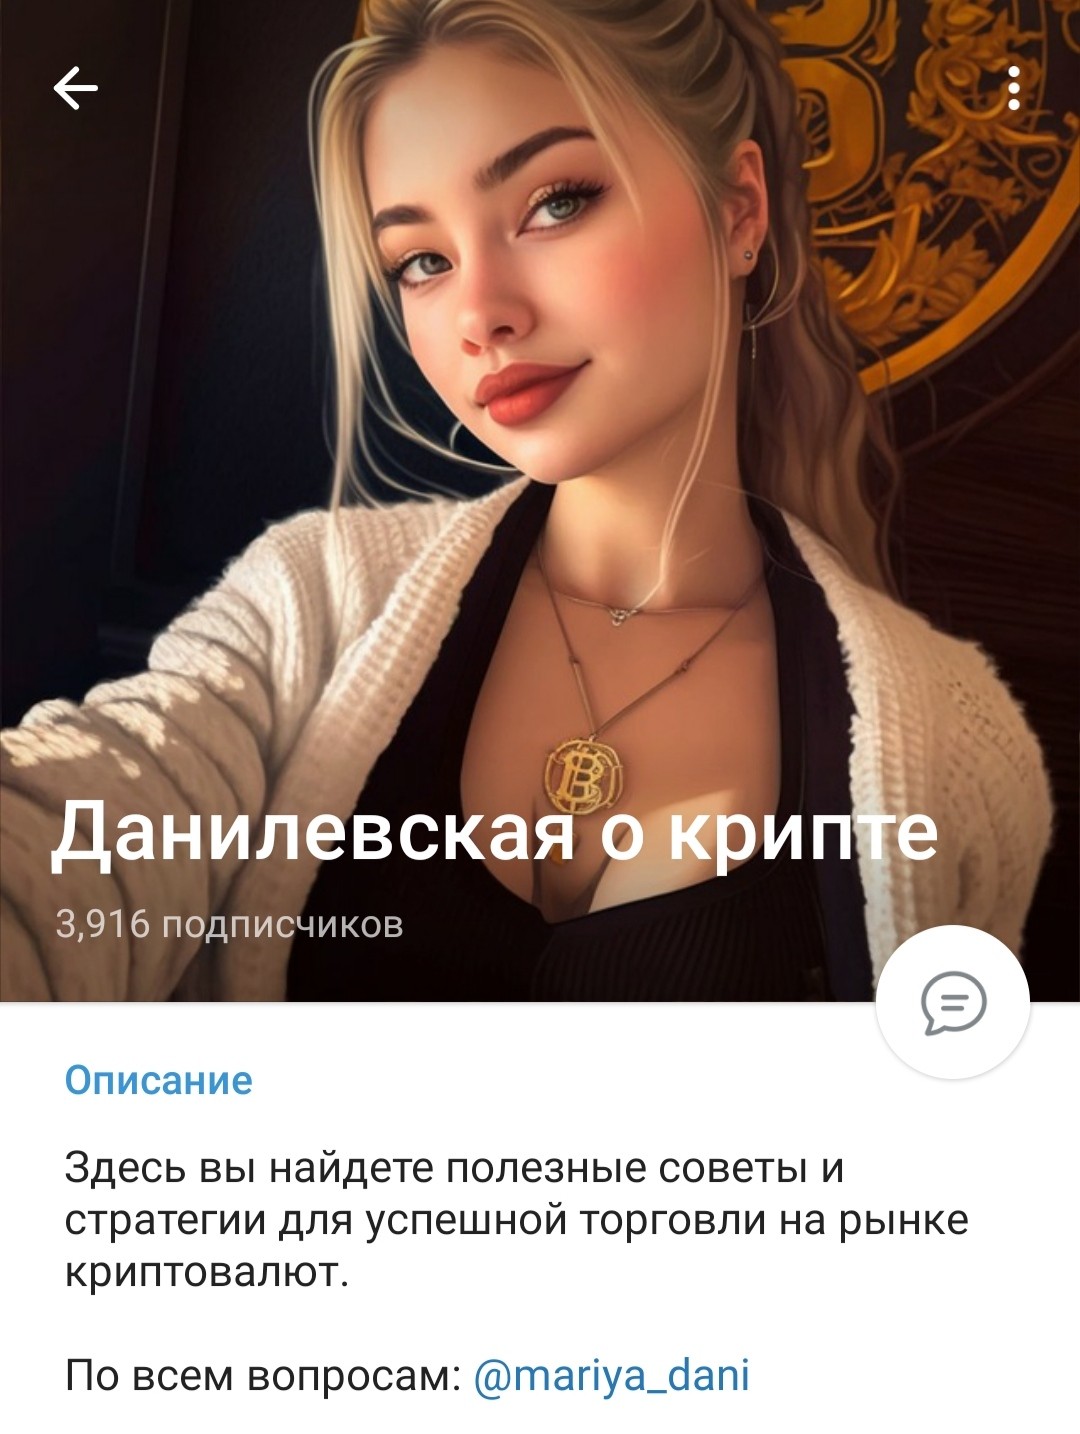 Телеграм канал Данилевская о крипте